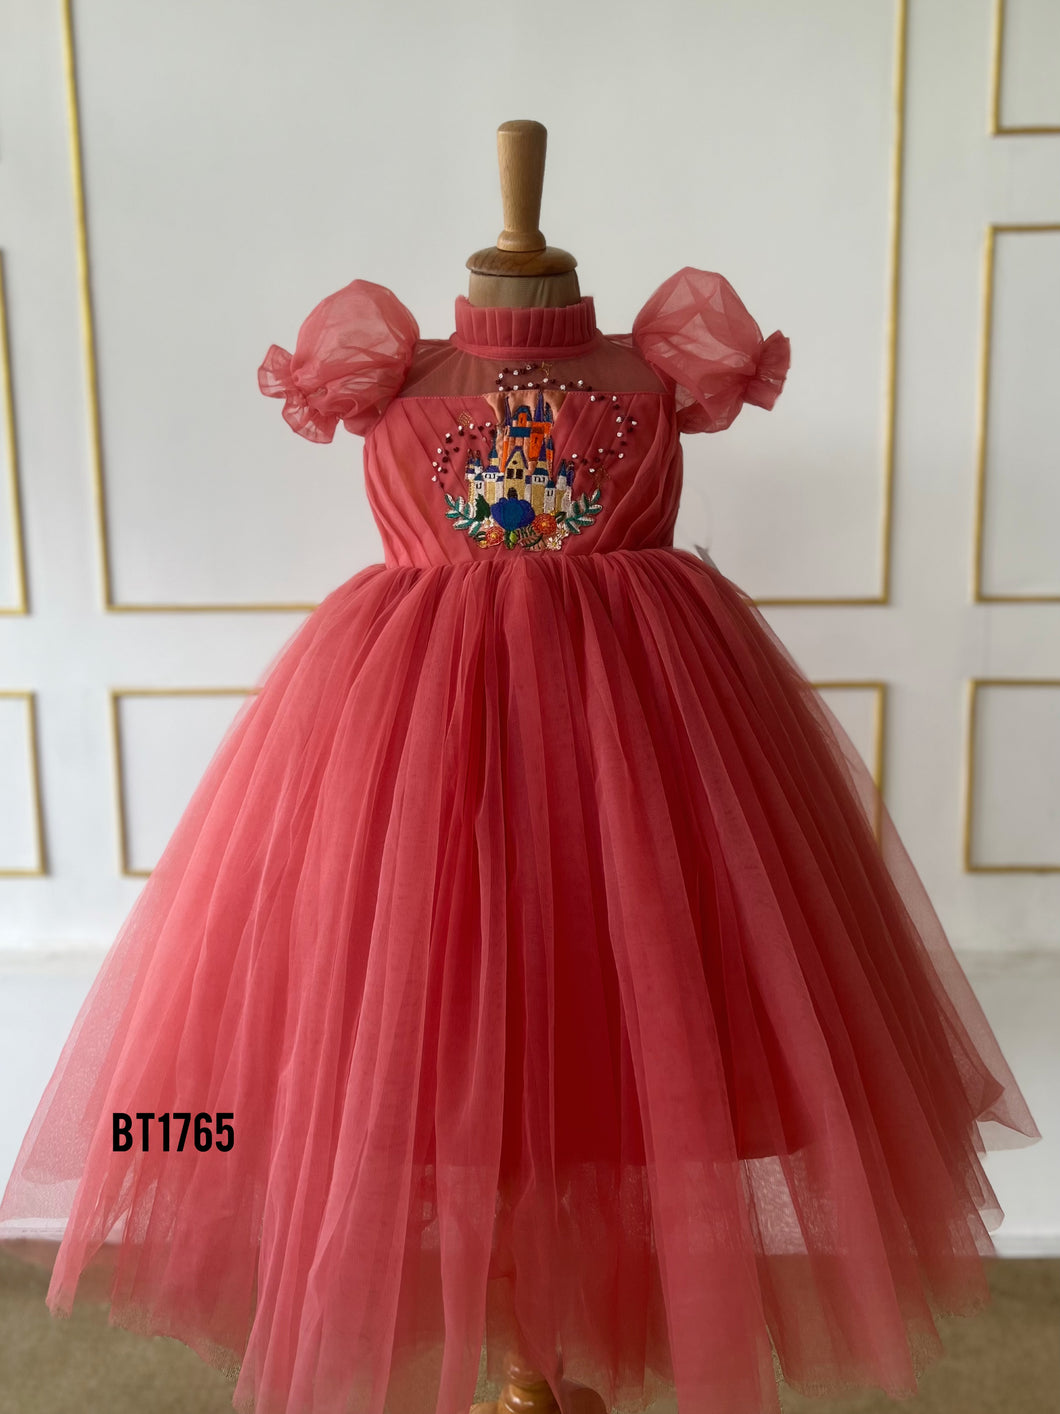 BT1765 Coral Castle Enchantment Dress for Little Dreamers